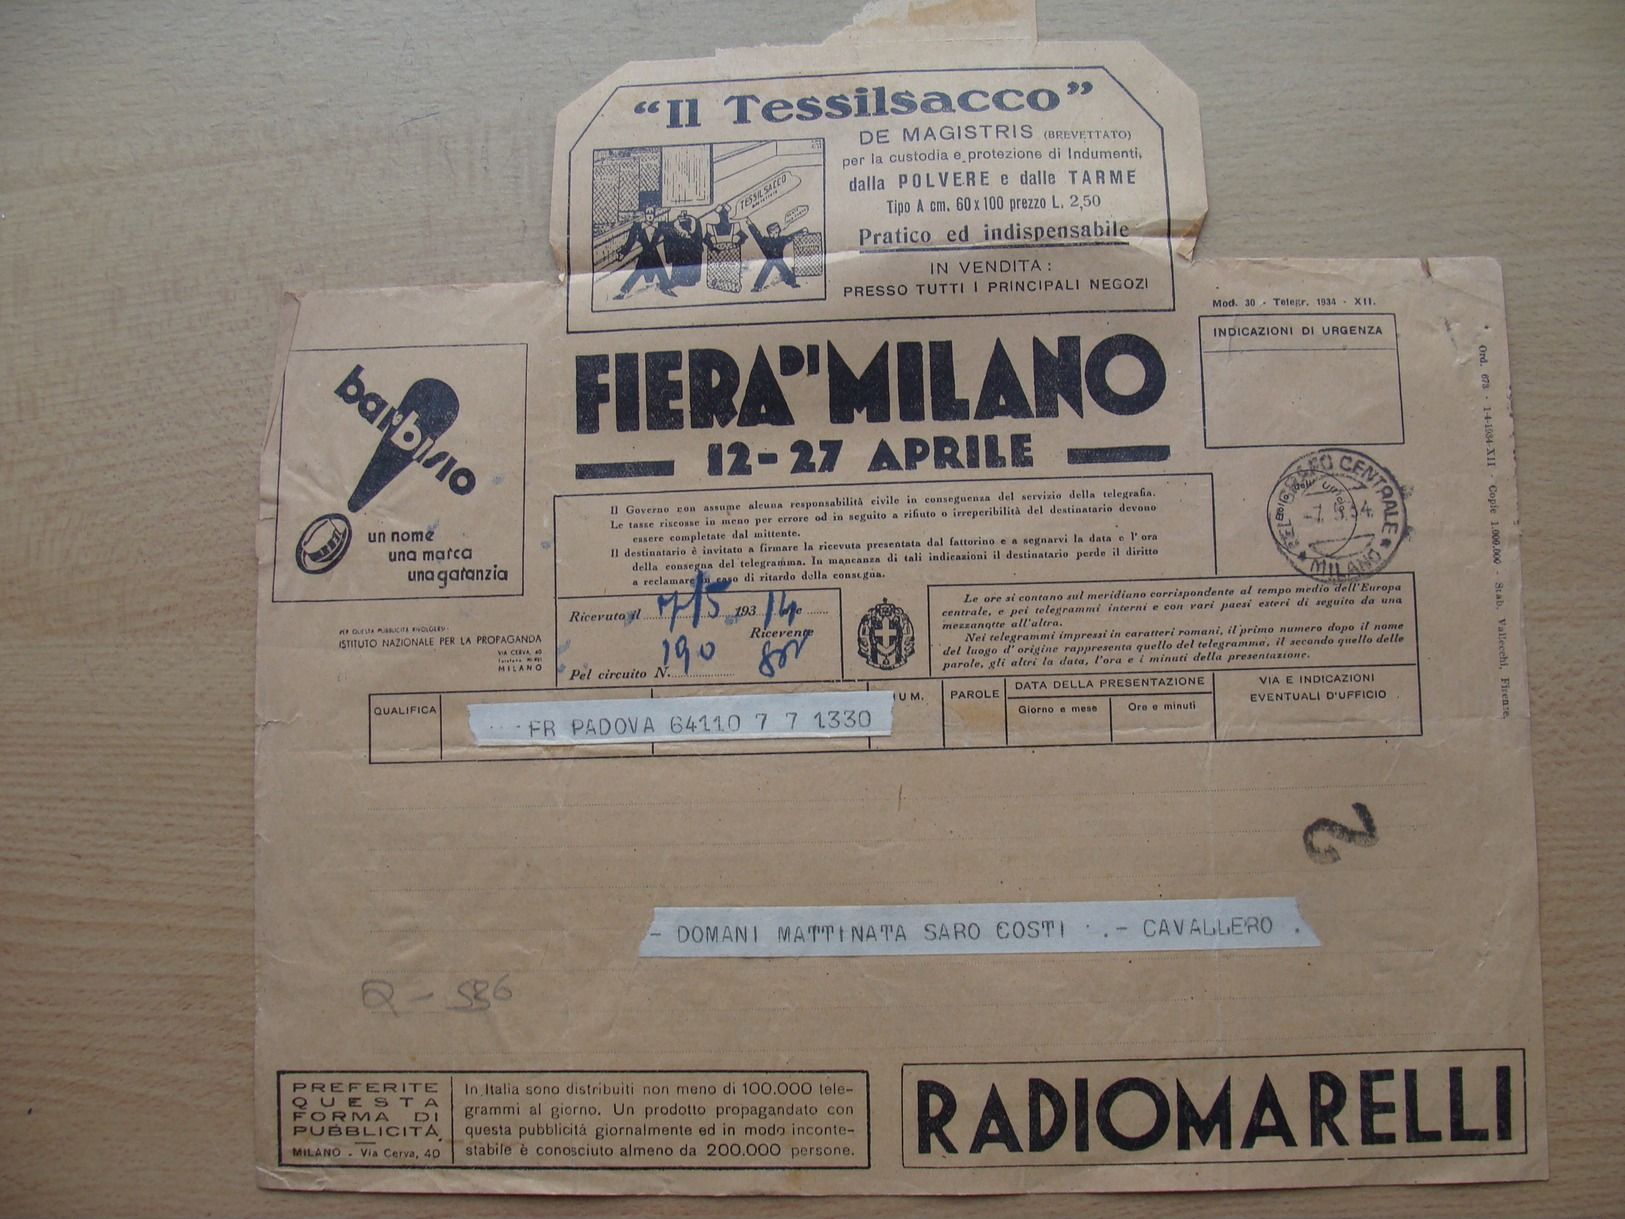 Italy telegram 1934-05-07 telegramma Diana advert tennis skiing ski tiro fishing hunting horseracing auto moto avio